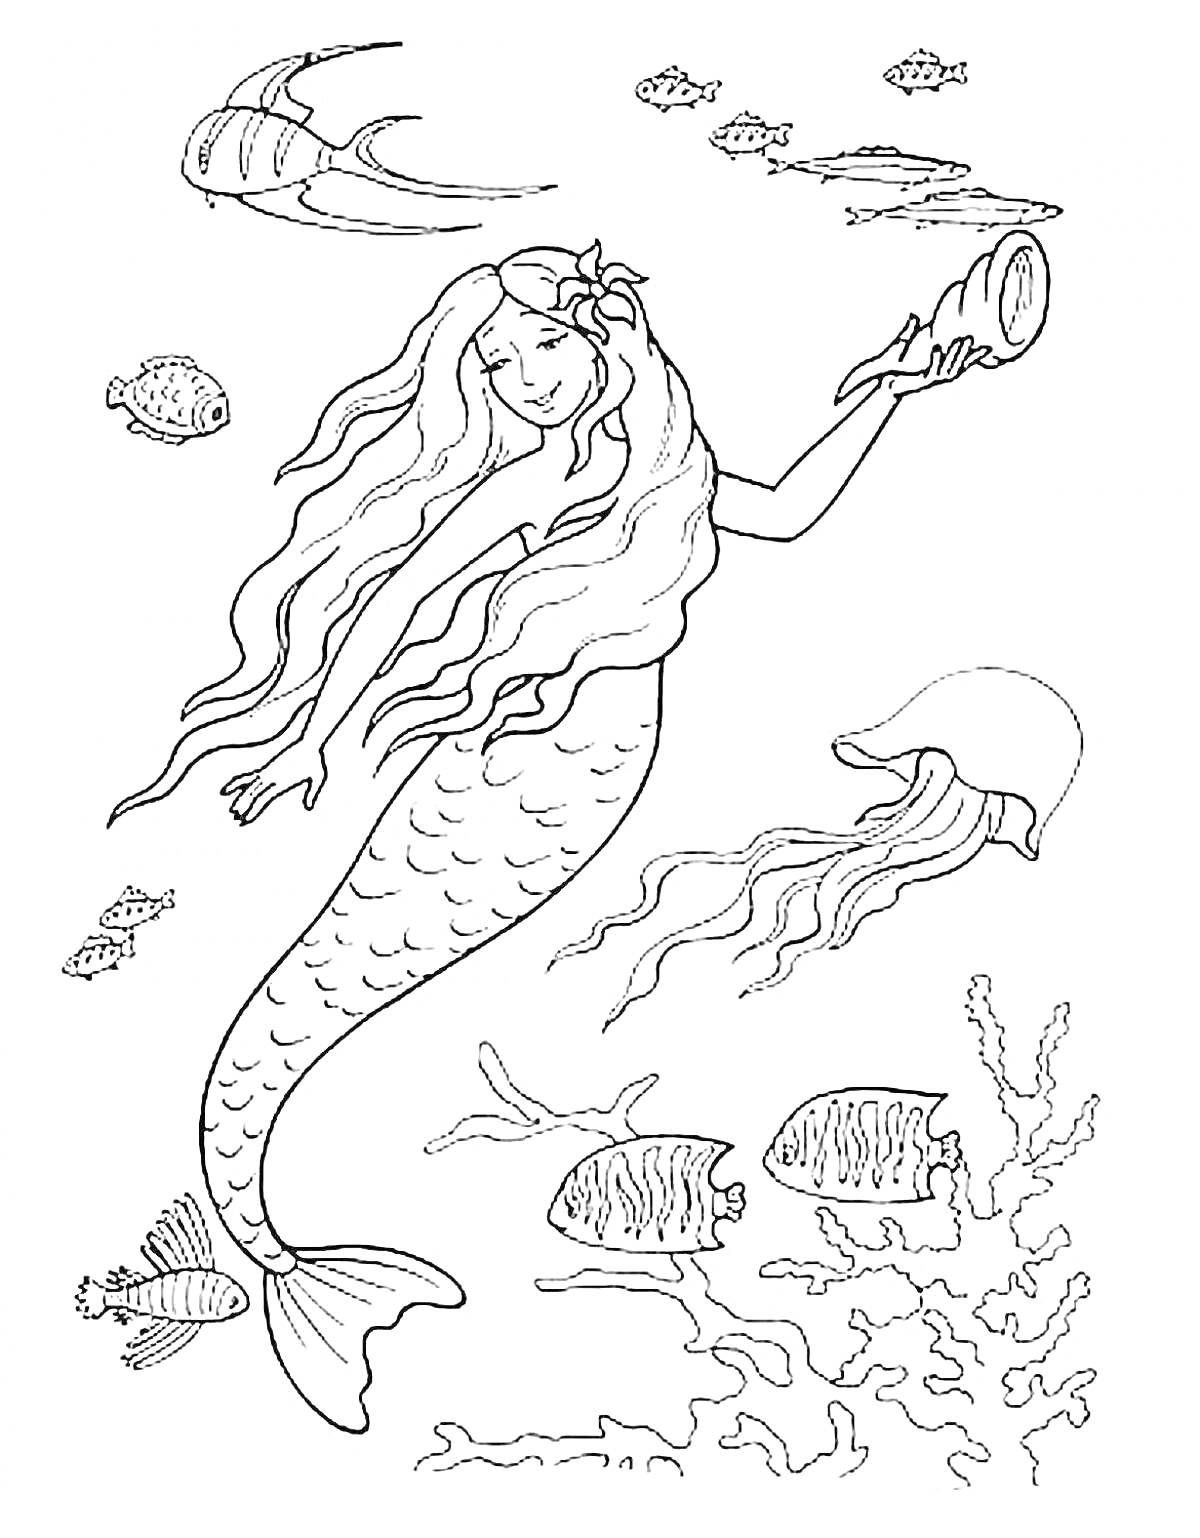 Раскраска Русалка с зеркальцем среди рыб и медузы под водой